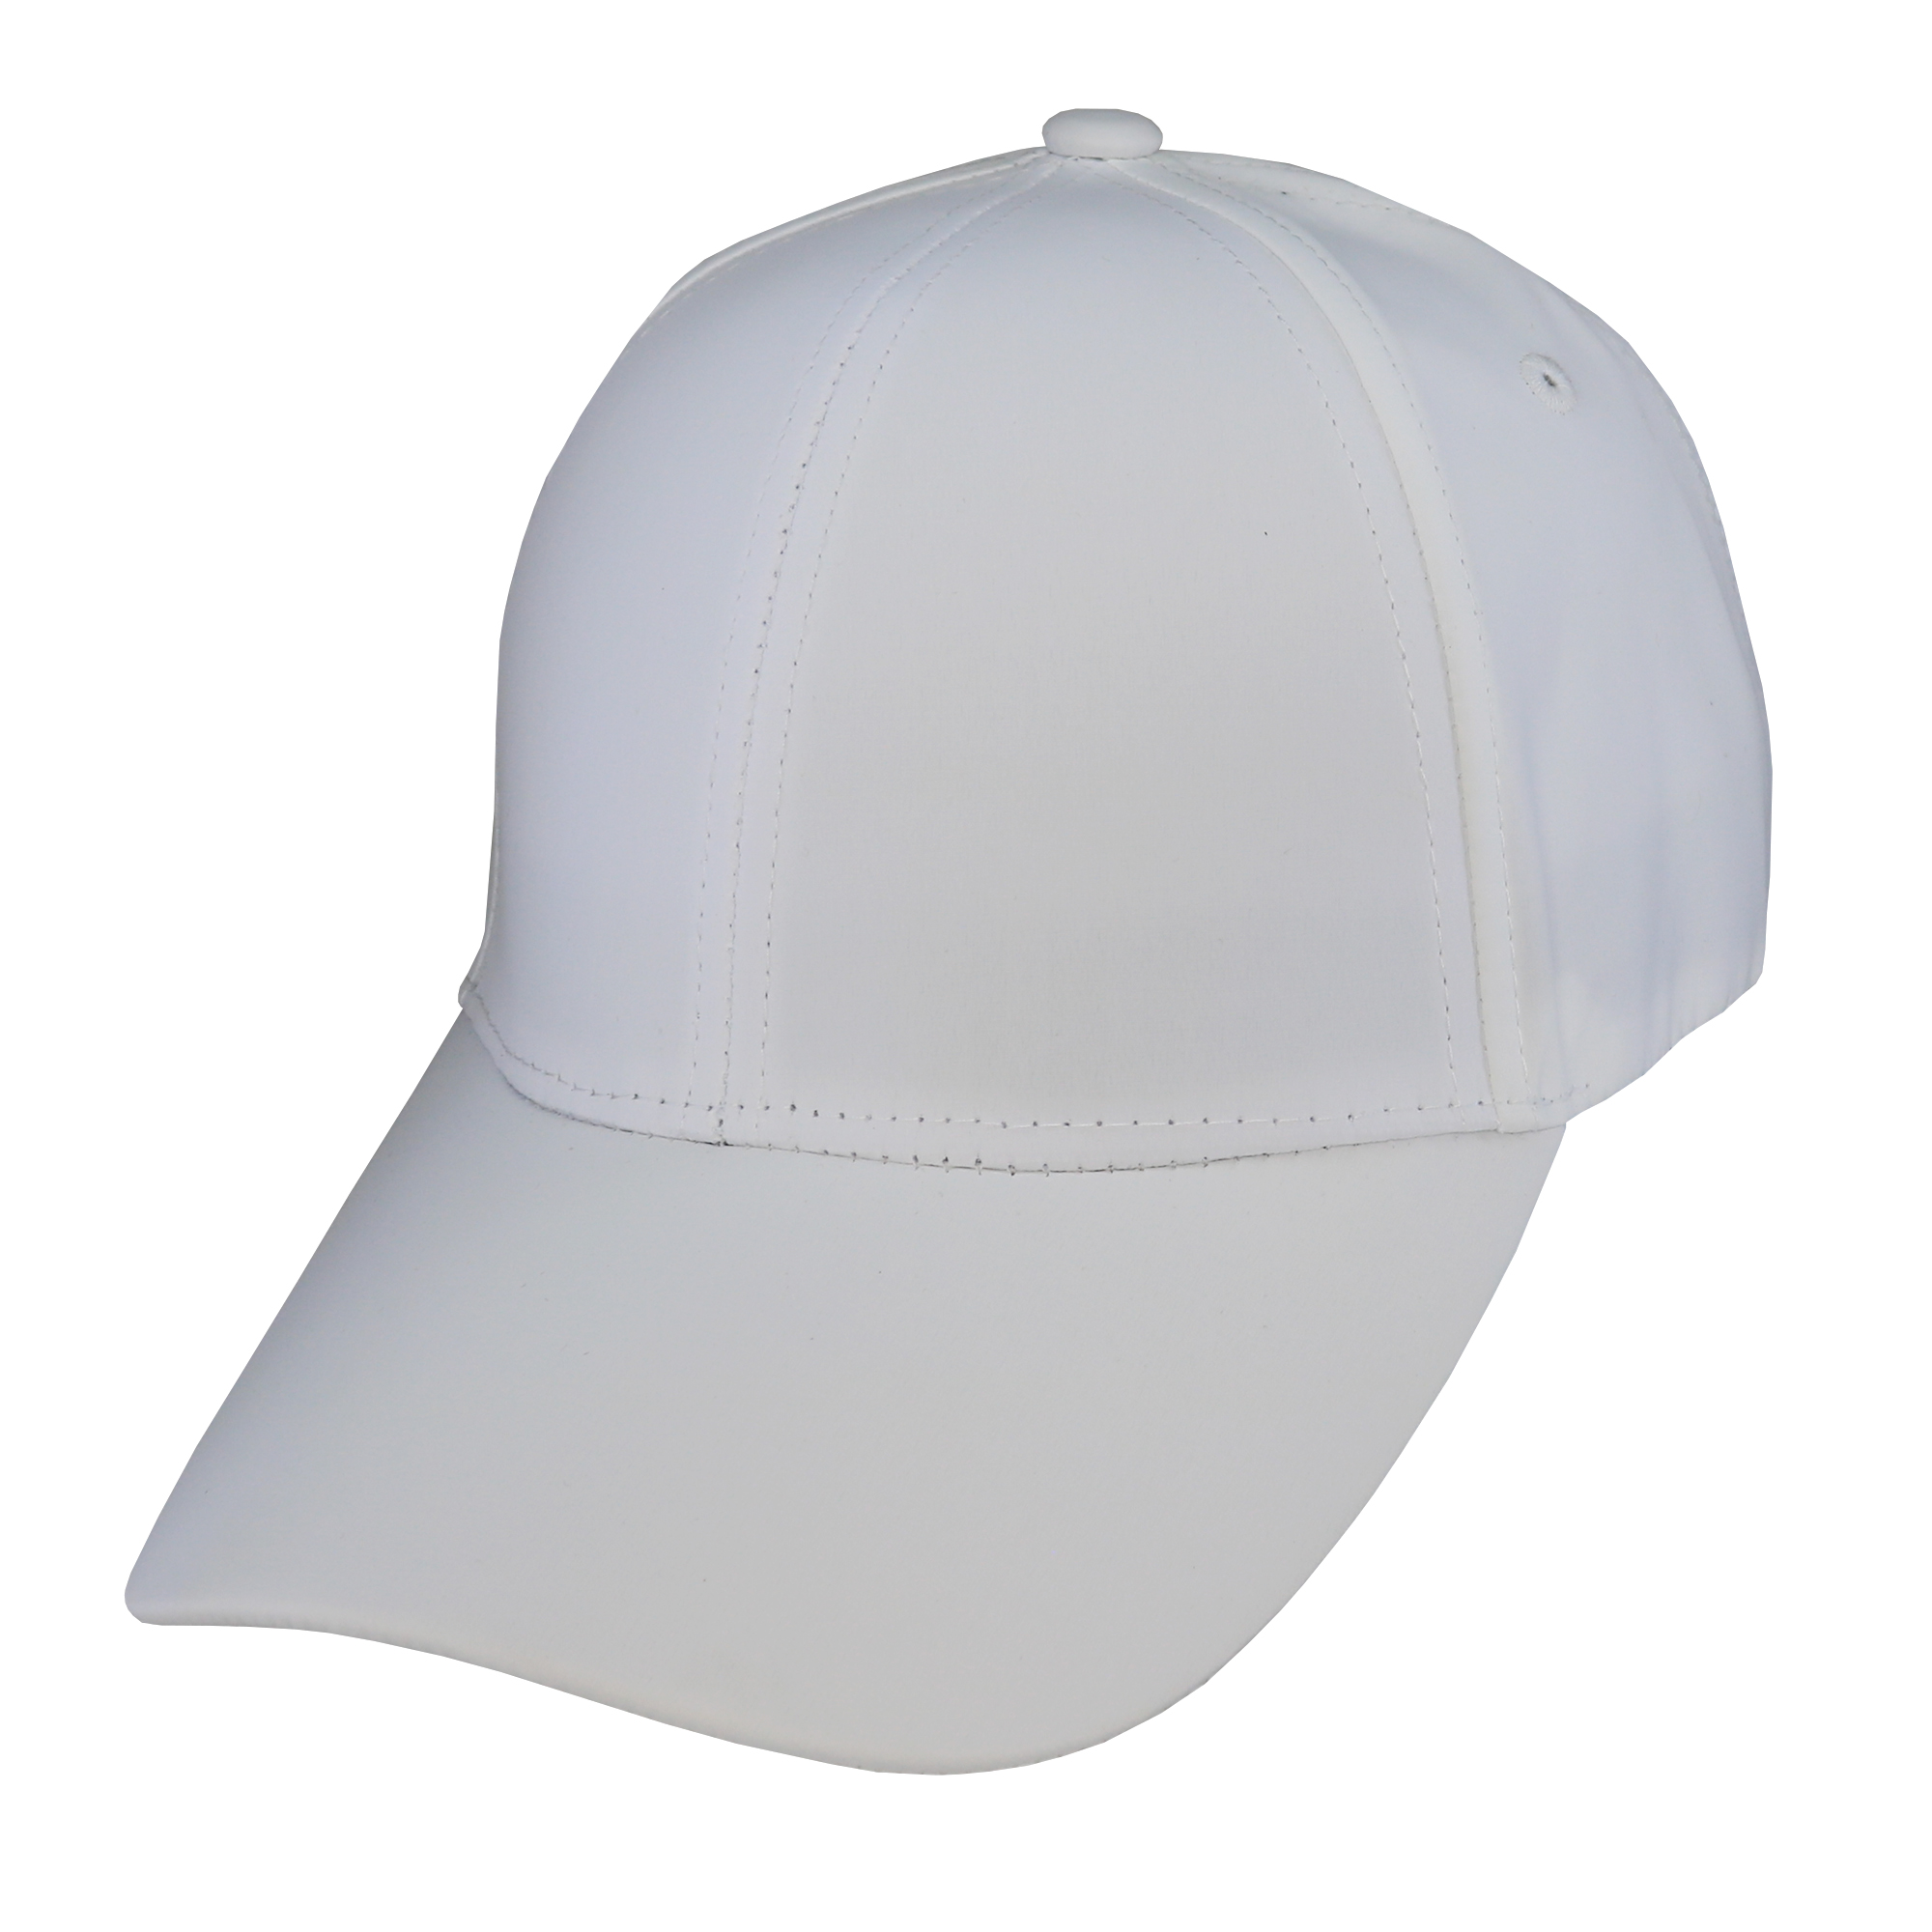 Gorra deportiva para adulto 6 gajos blanca